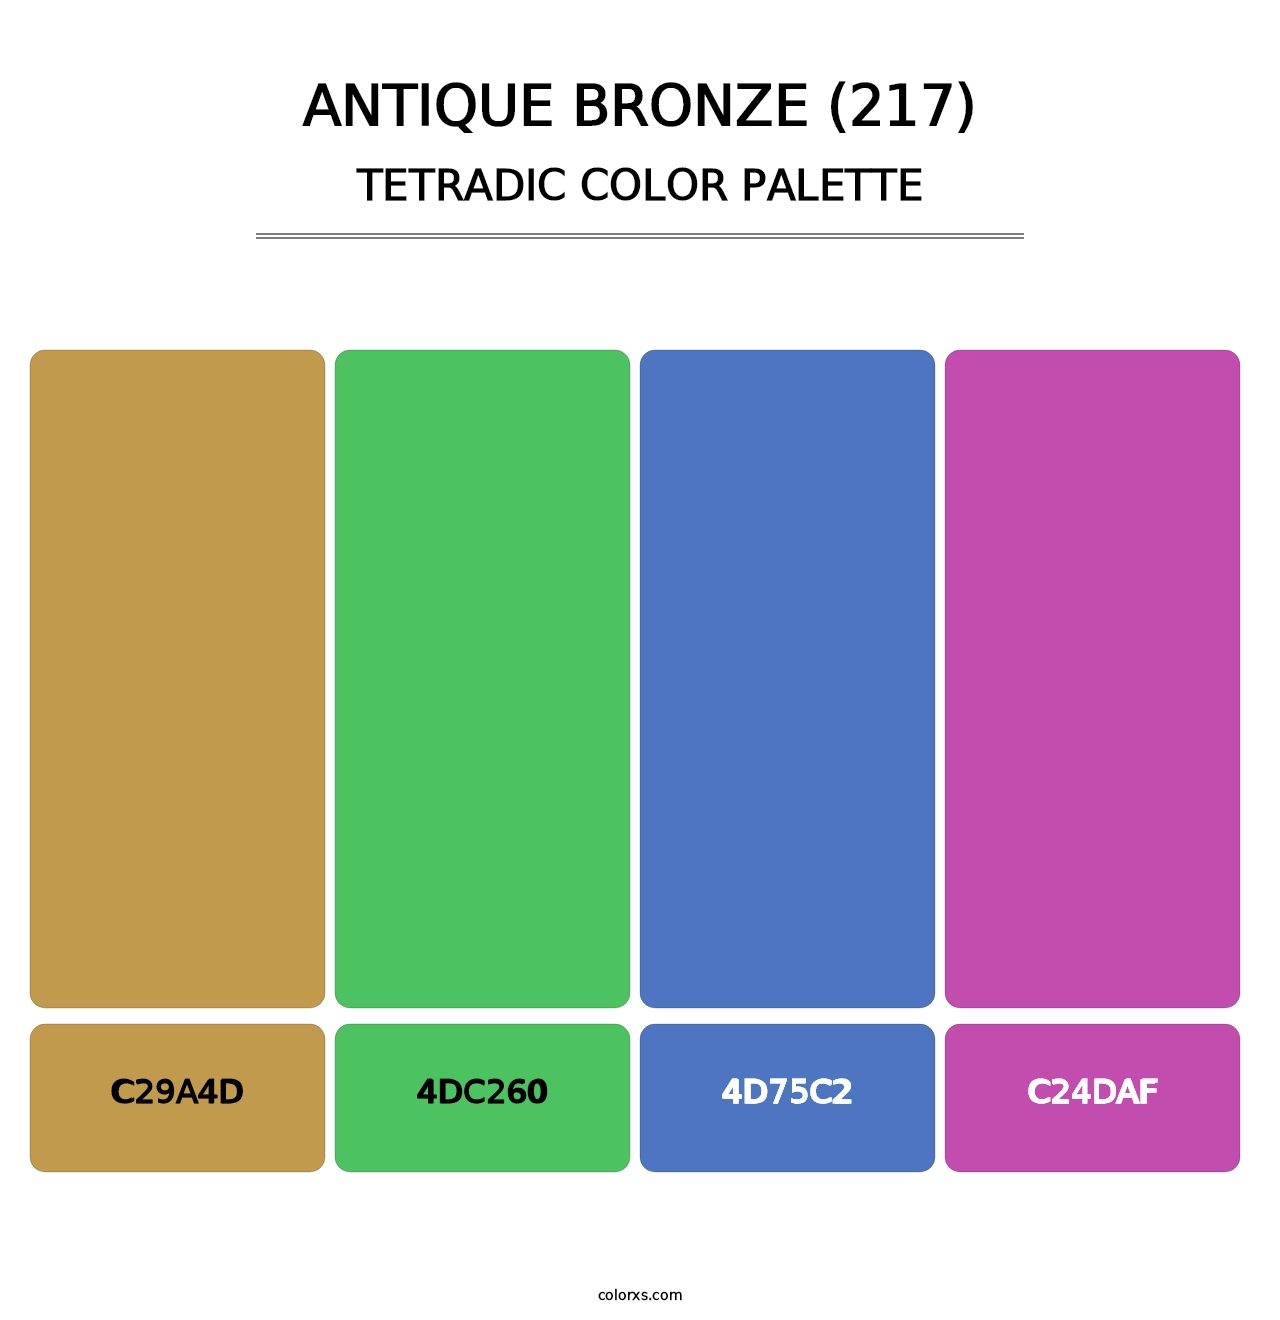 Antique Bronze (217) - Tetradic Color Palette